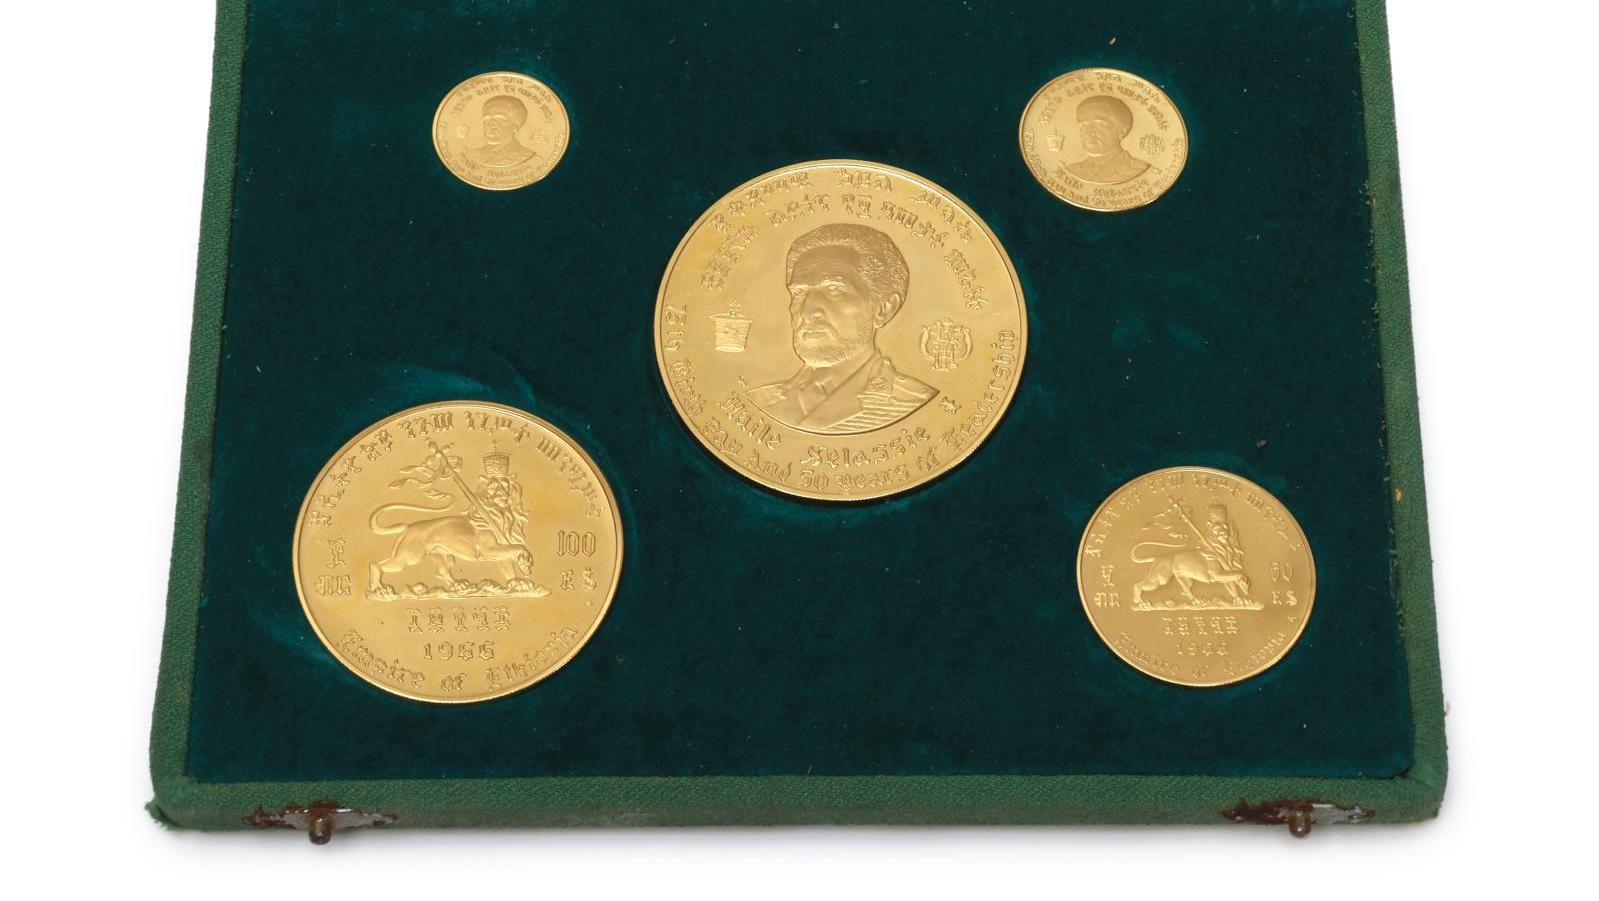   Monnaies d'or pour Hailé Sélassié